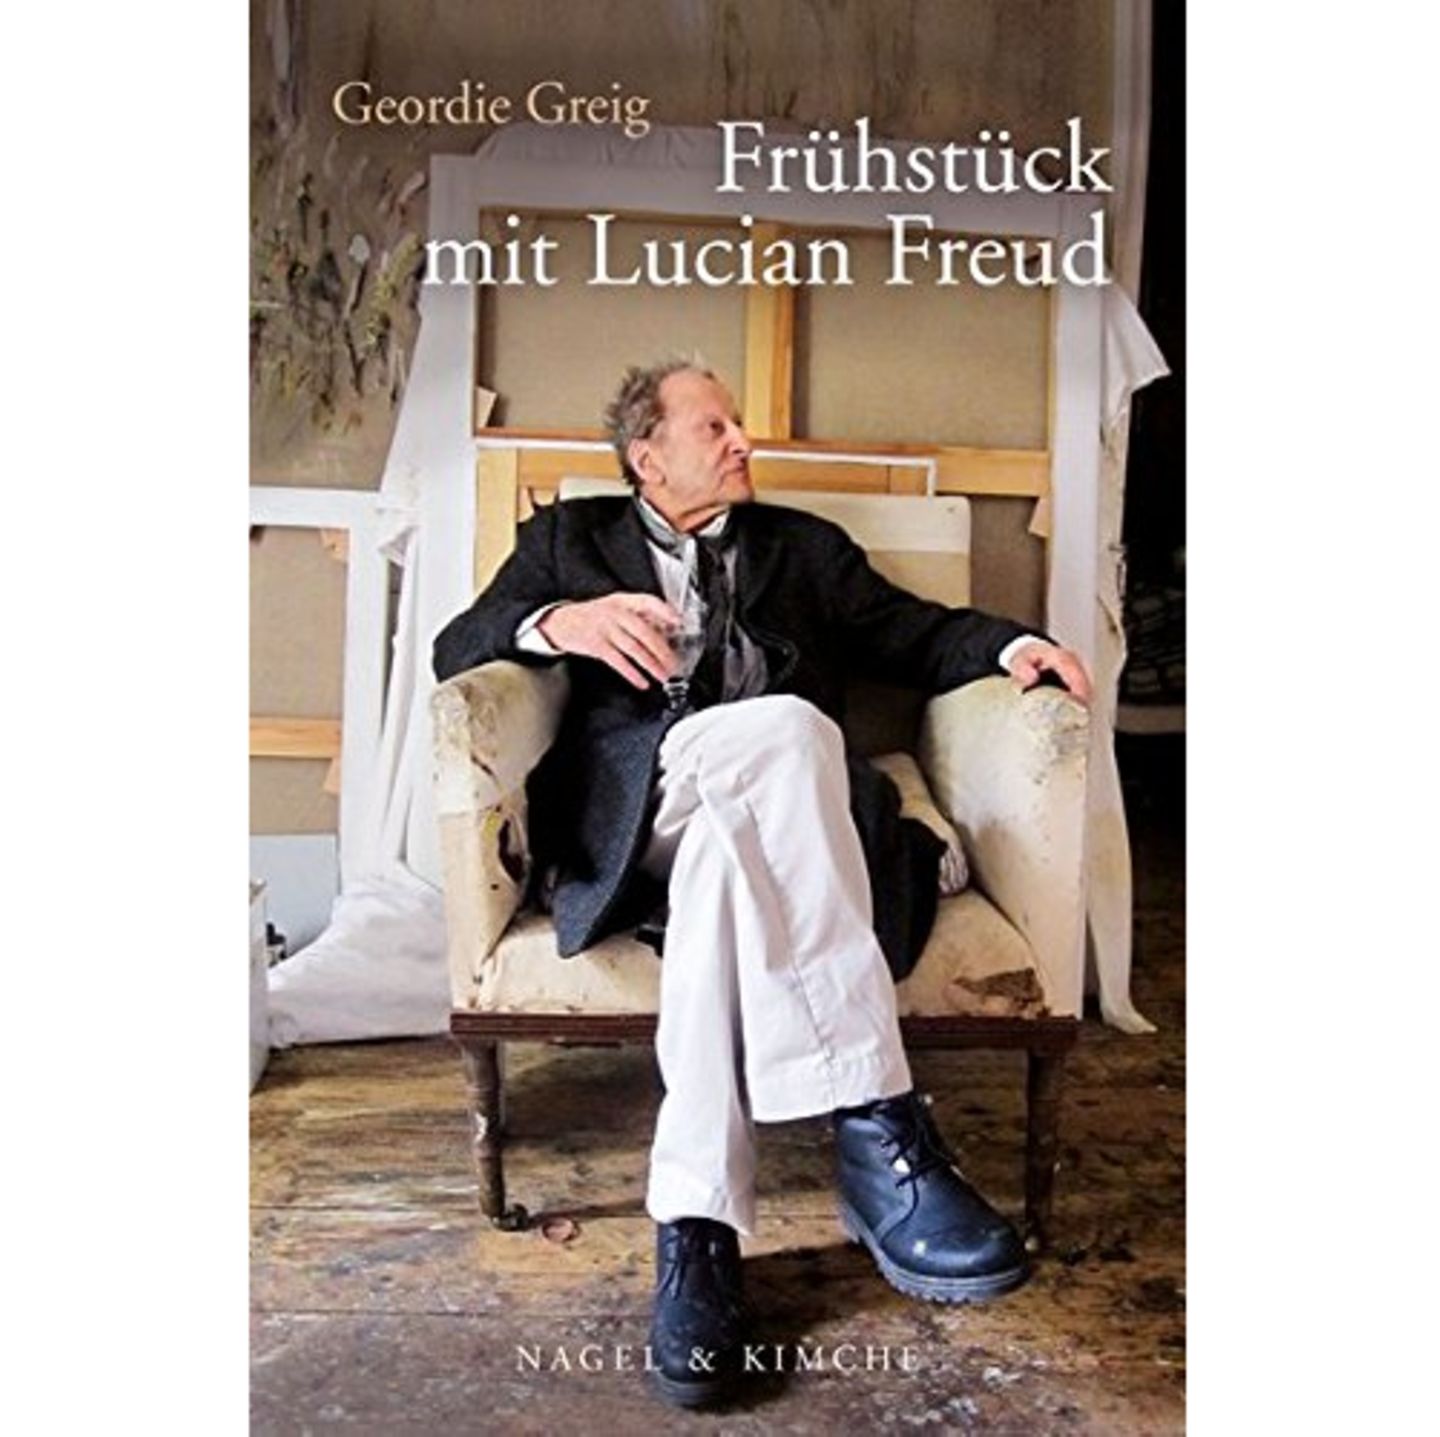 Geordie Greif: Frühstück mit Lucian Freud